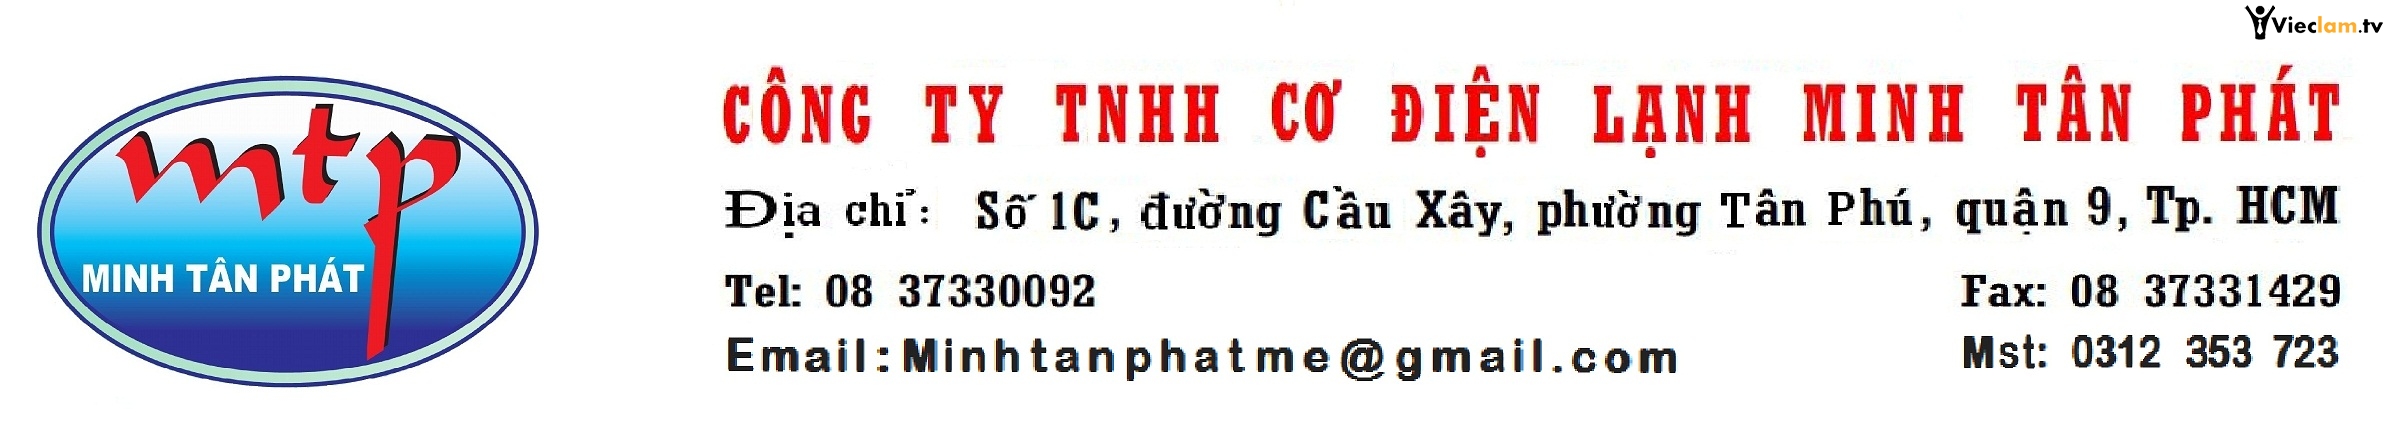 Logo Công ty TNHH Cơ điện lạnh Minh Tân Phát